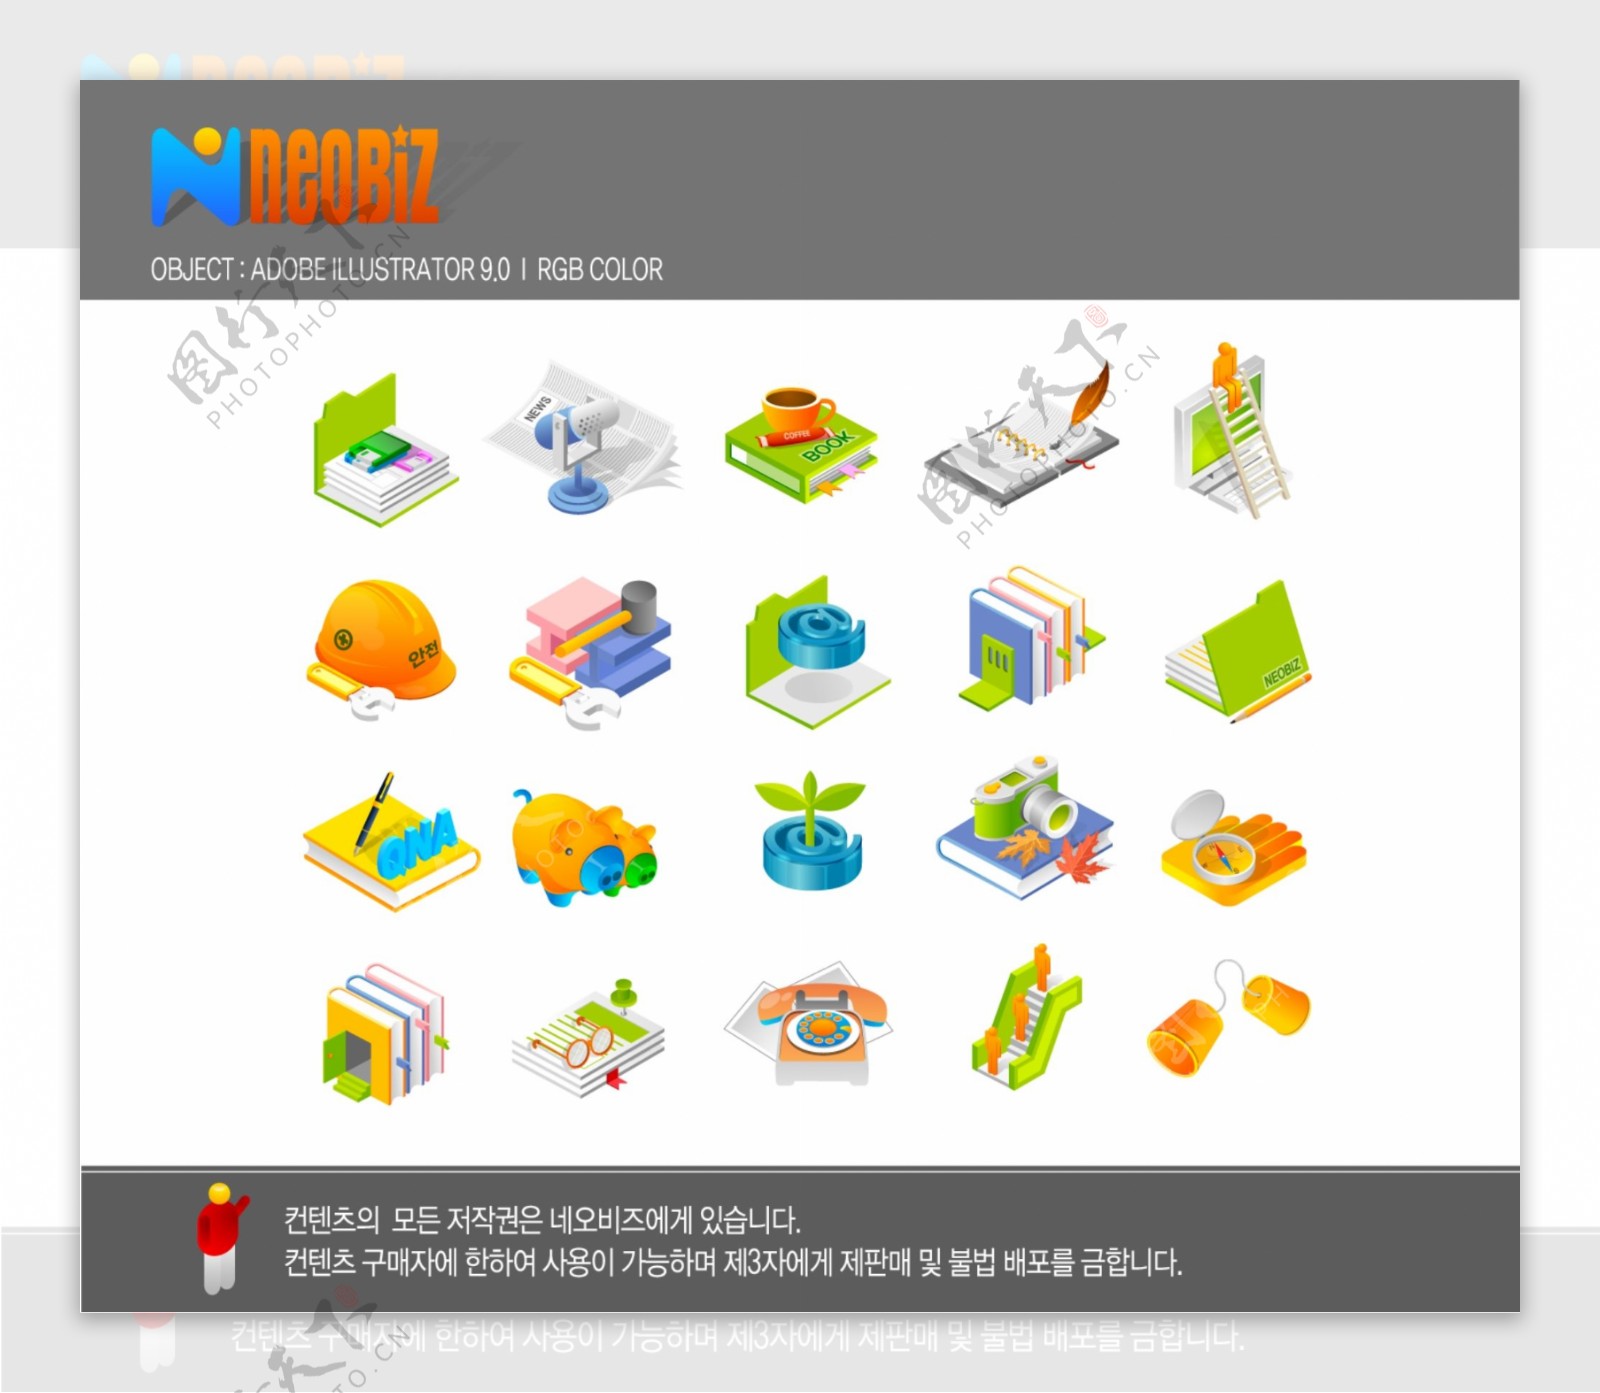 韩国风格网站图标图片